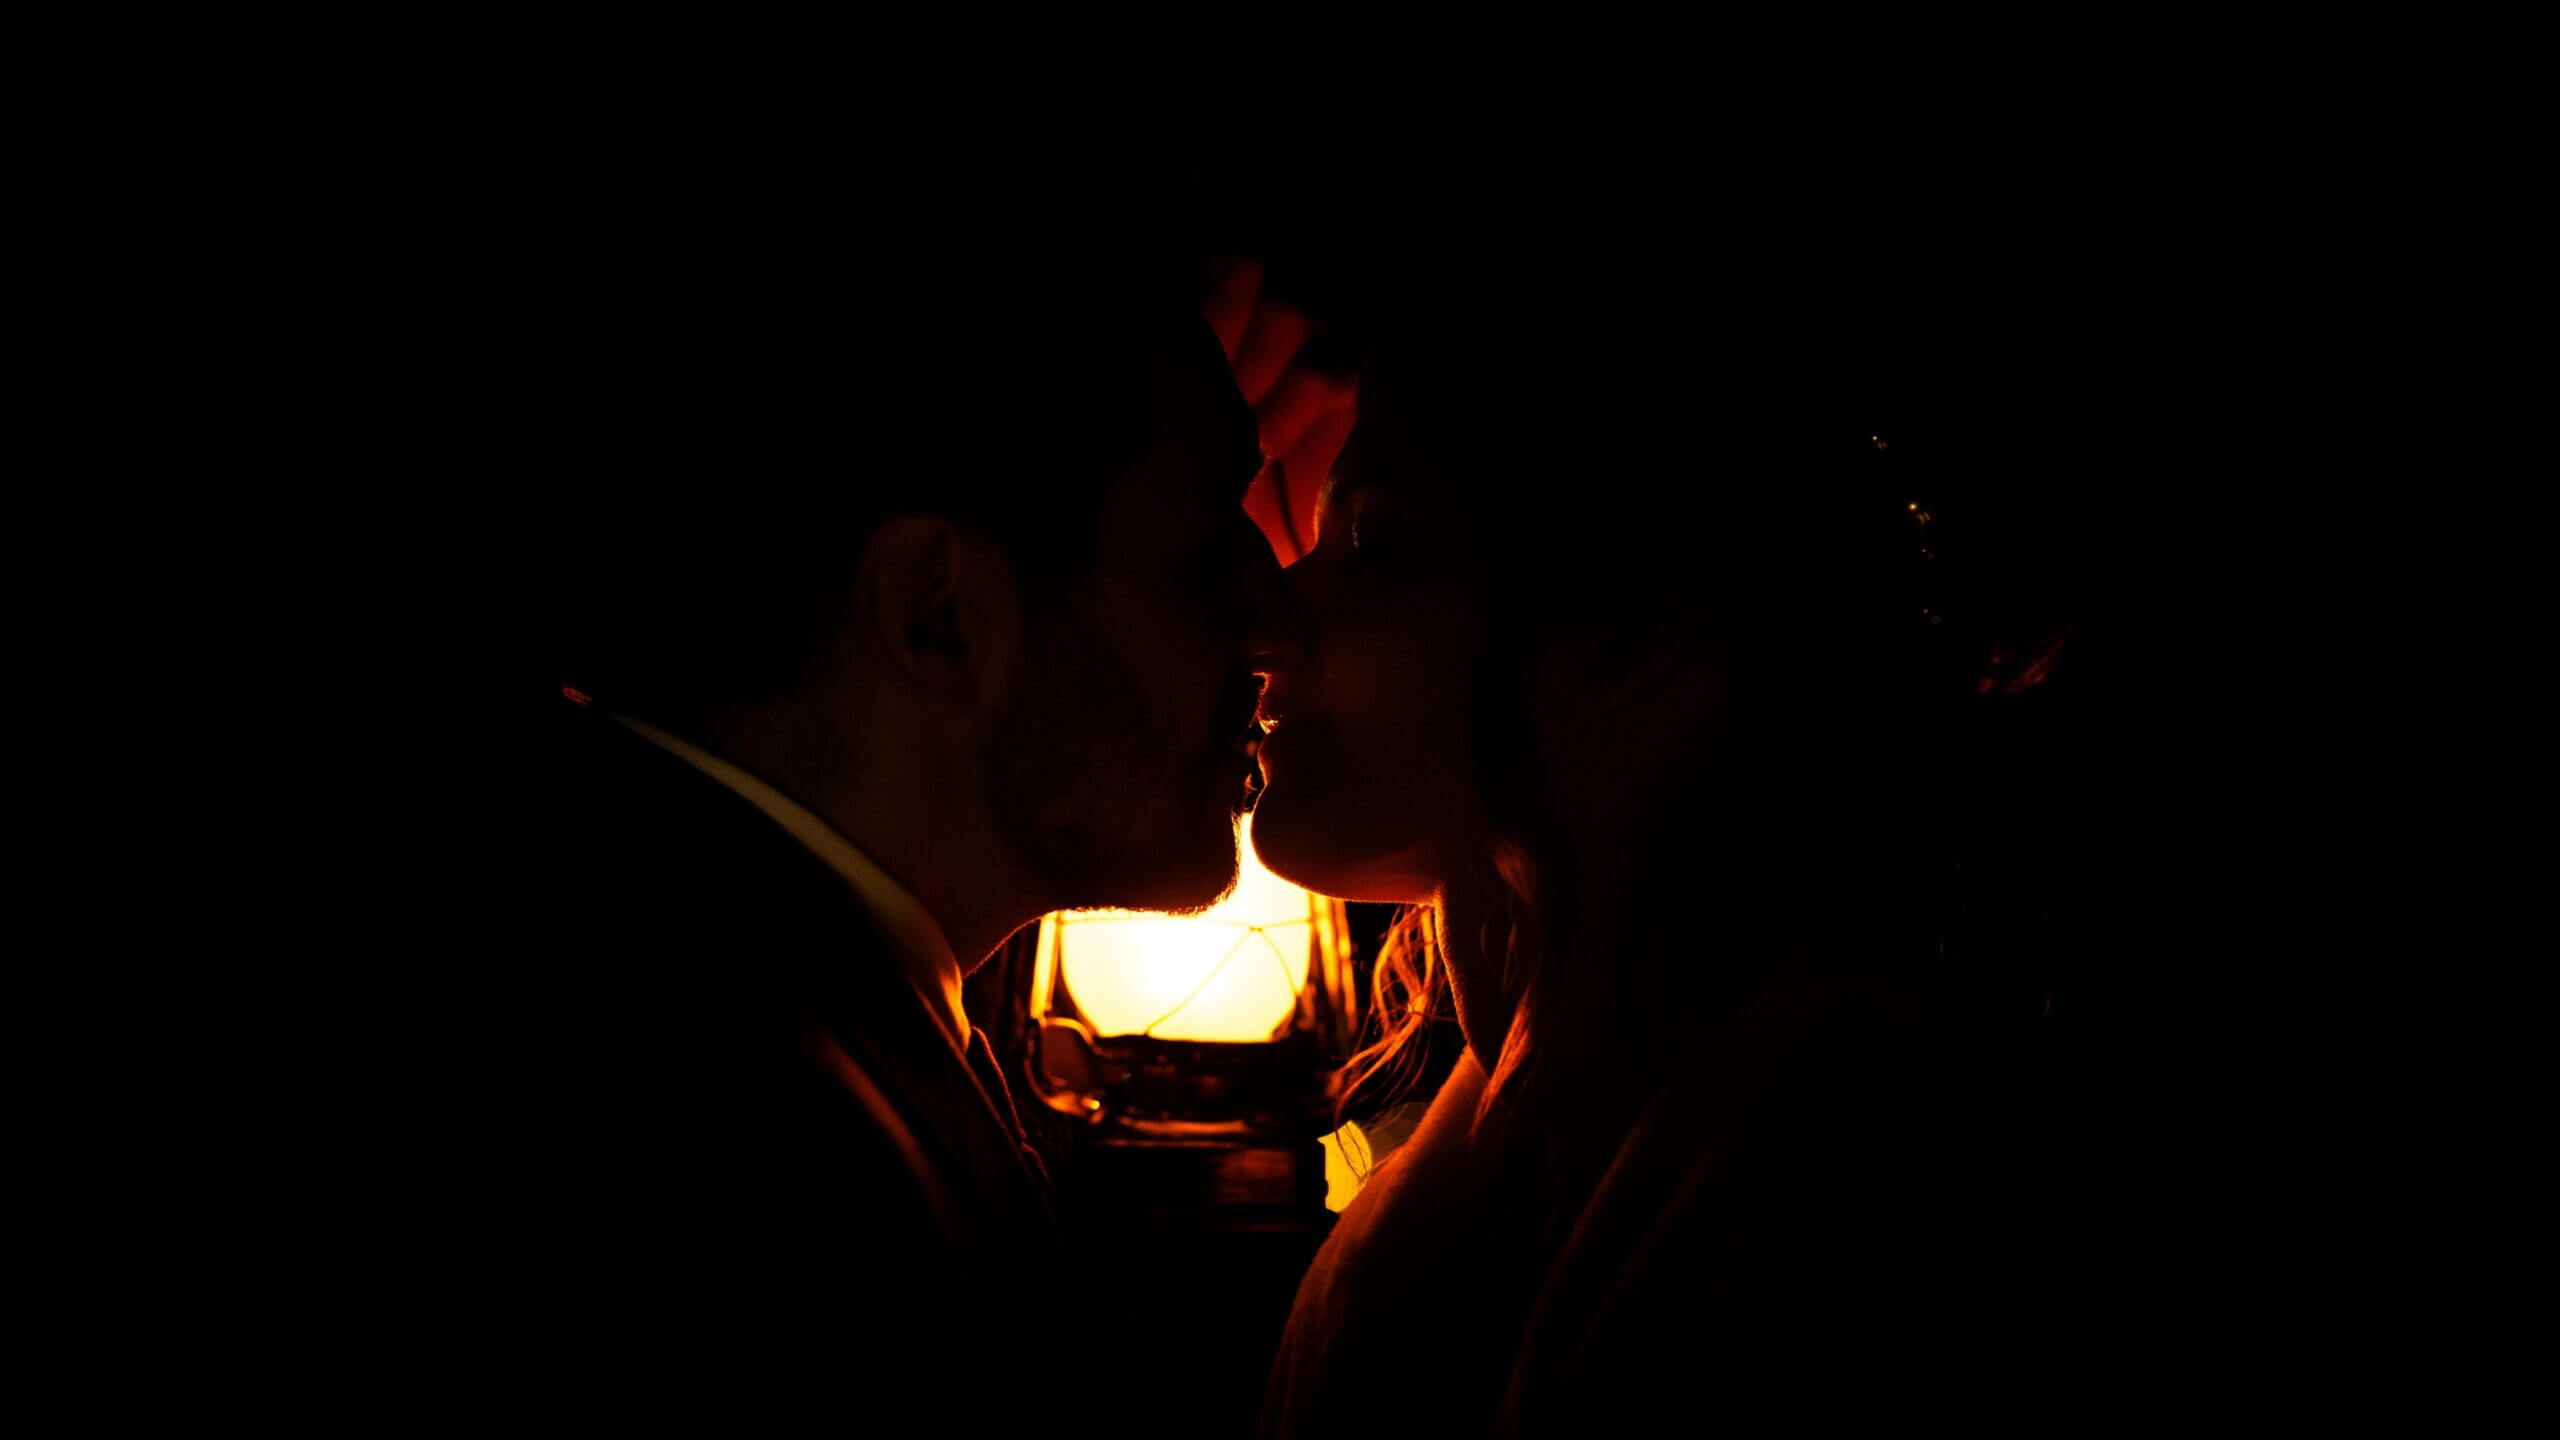 Une lumière douce : Deux mariés en tenues dans le noir éclairés par une lampe à pétrole. La photo est pris en cadrage serré et la lueur de la lampe se reflète sur leur visage pendant qu'ils s'embrassent.